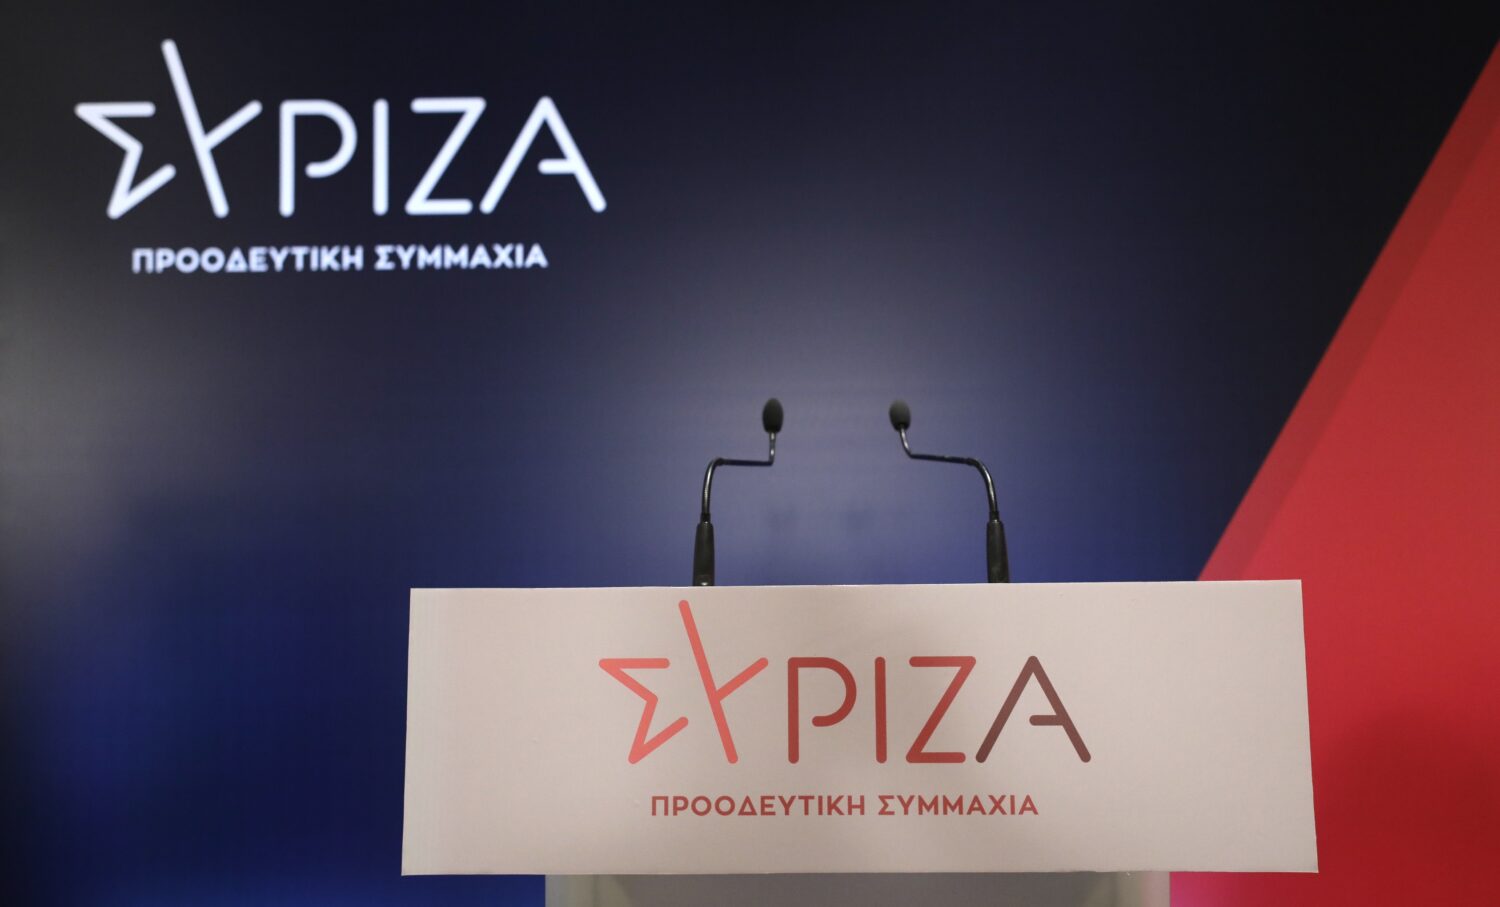 ΣΥΡΙΖΑ: Το 2022 μπορεί να γίνει ένα έτος αλλαγής, όπου η χώρα θα μπει σε ράγες σταθερότητας